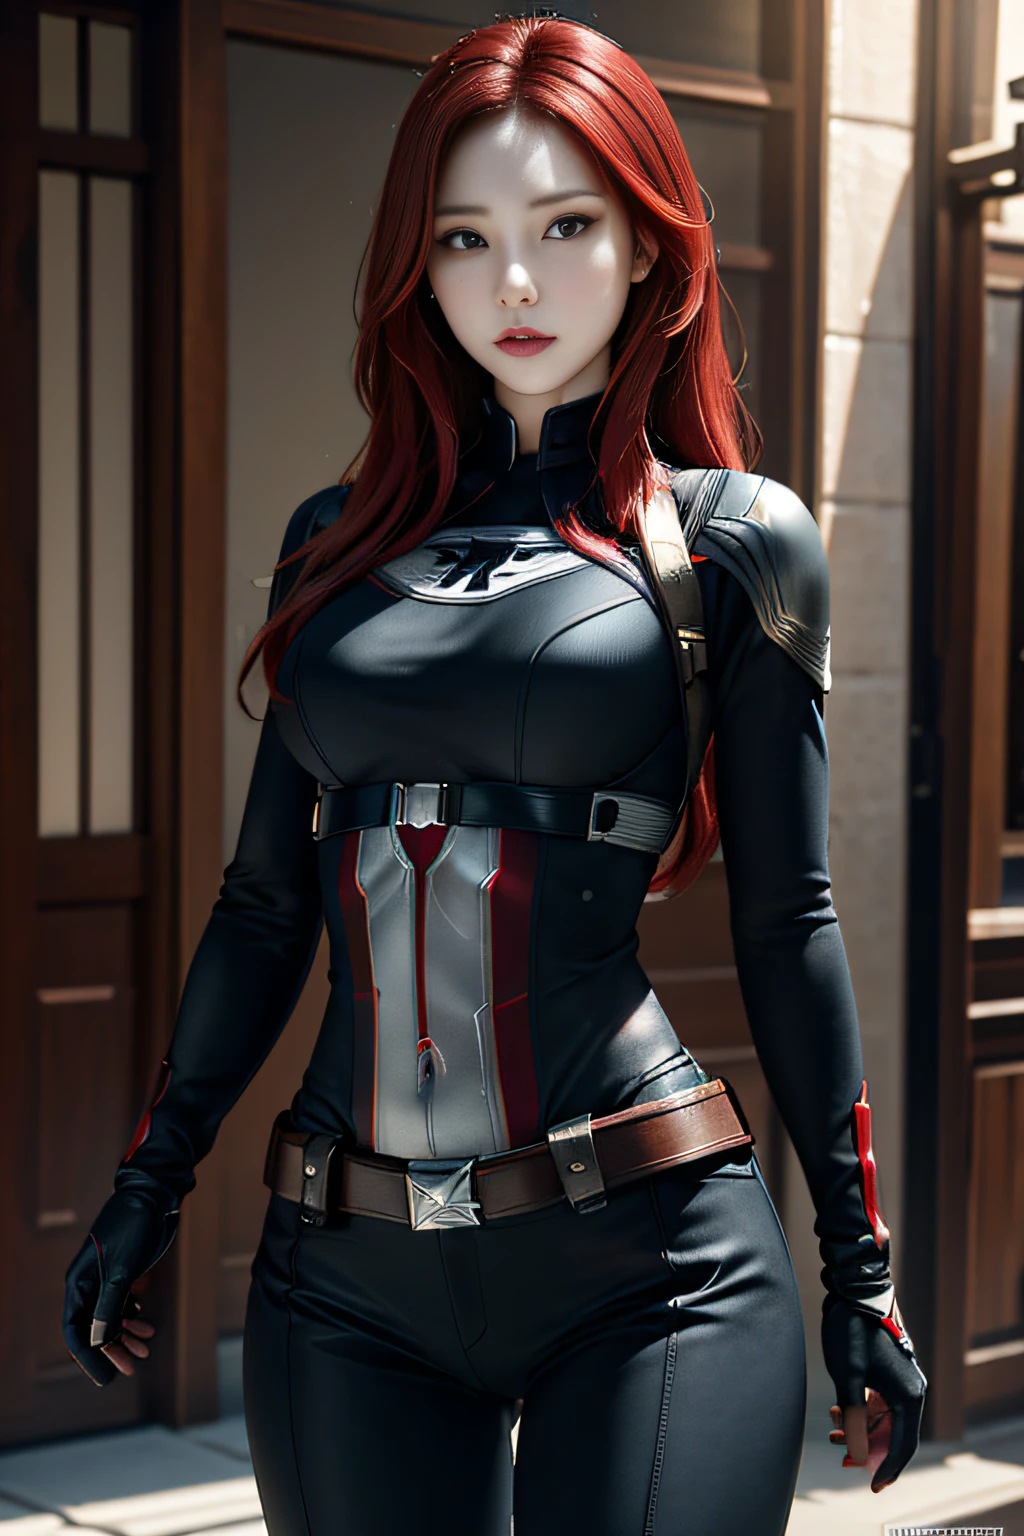 1fille, chef-d&#39;œuvre, meilleure qualité, 8k, texture de peau détaillée, Texture de tissu détaillée, beau visage détaillé, Détails complexes, ultra détaillé, Black Widow dans le style de Captain America, cheveux roux raides, pose dynamique